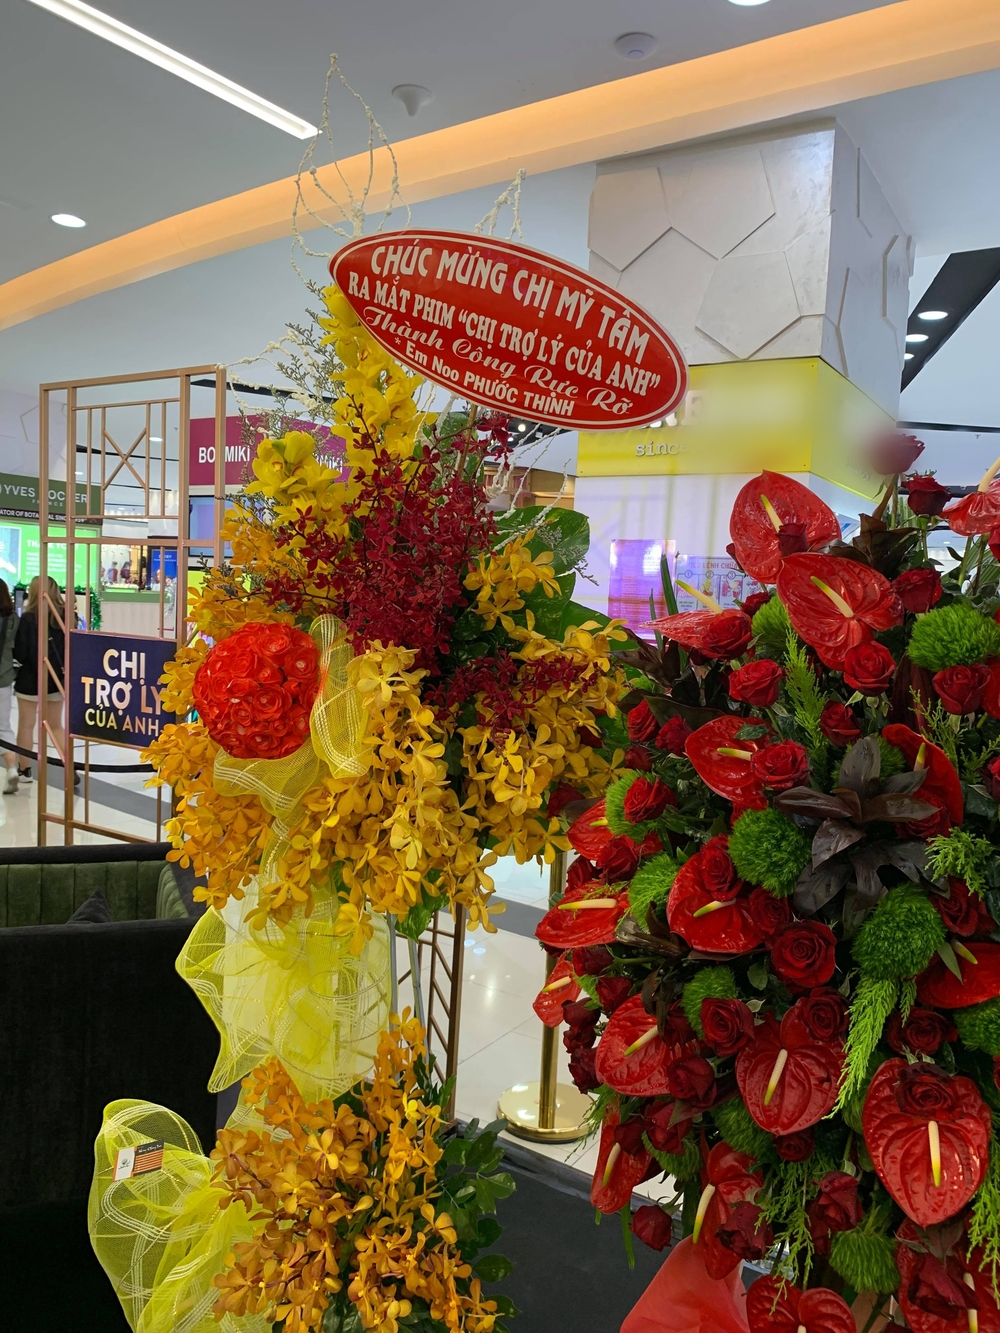 
Trùng lịch trình không tham gia sự kiện nhưng Noo Phước Thịnh cũng không quên gửi hoa đến chúc mừng đàn chị Mỹ Tâm.